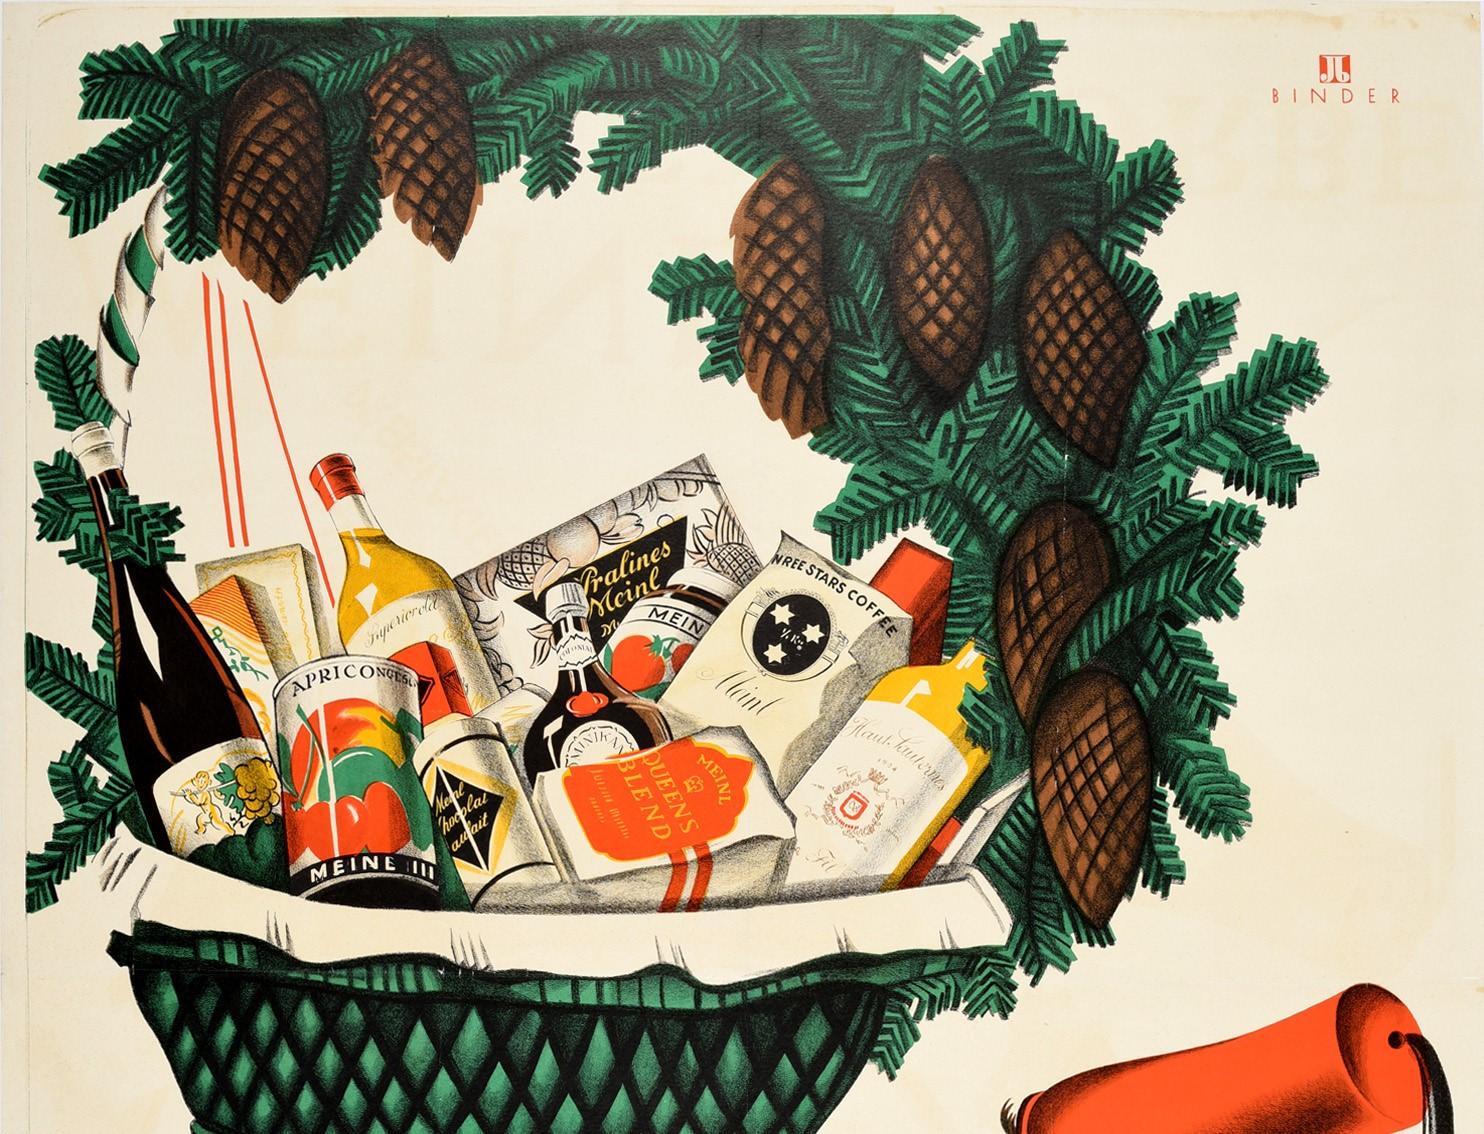 Affiche publicitaire vintage originale Meinl gift baskets / Meinl Geschenkkorbe présentant un superbe dessin représentant une personne tenant un panier vert contenant des aliments et des boissons, notamment des pralines, du thé et du café, du vin et